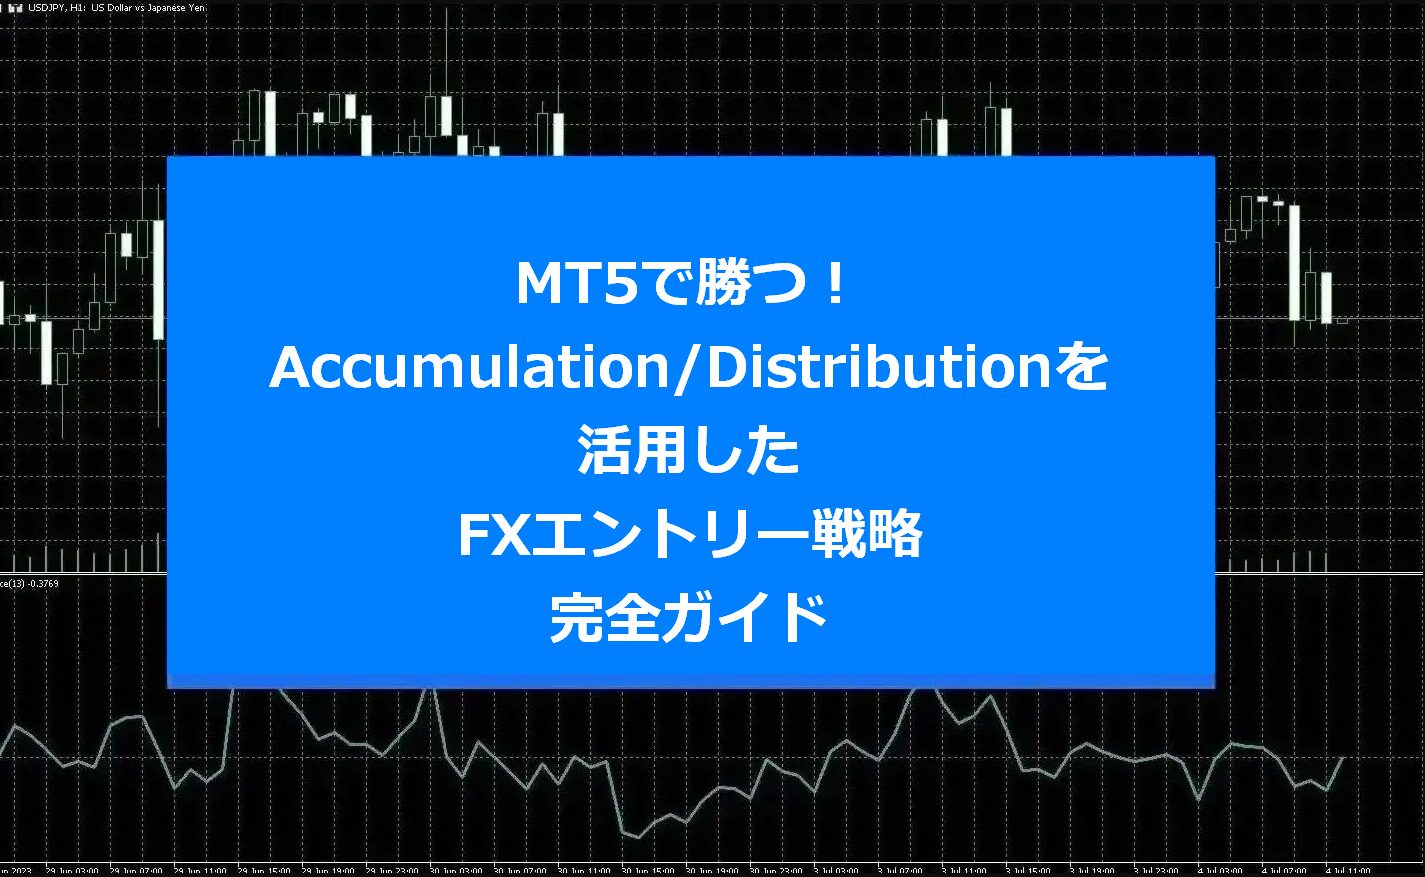 MT5で勝つ！Accumulation/Distributionを活用したFXエントリー戦略完全ガイド